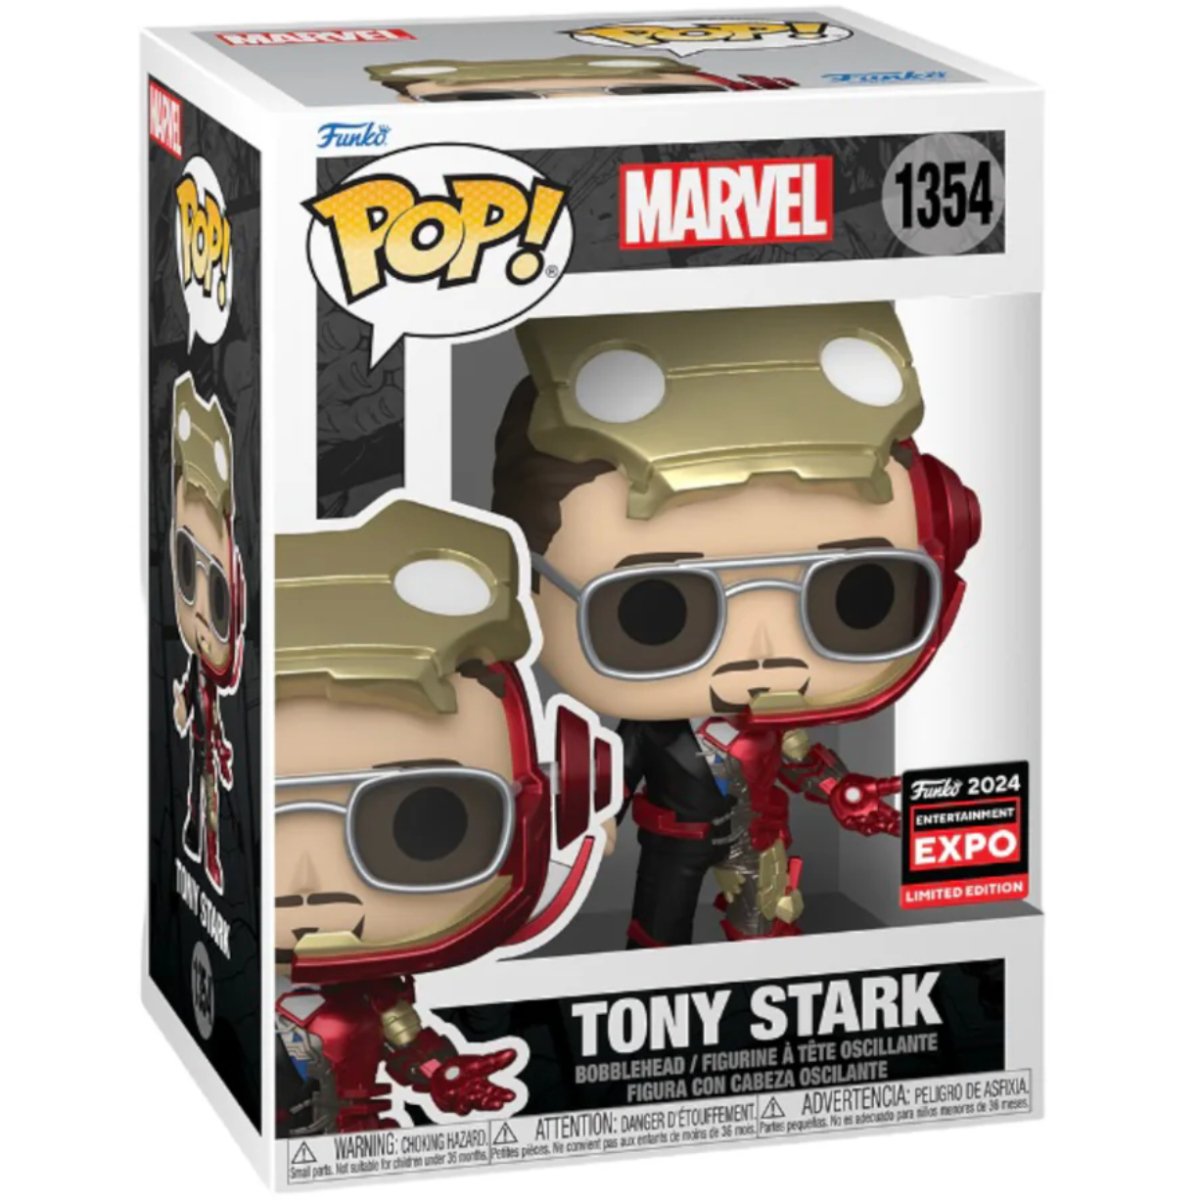 Marvel - Tony Stark (2024 Entertainment Expo Limited Edition) #1354 - Funko Pop! Vinyl Marvel - Persona Toys